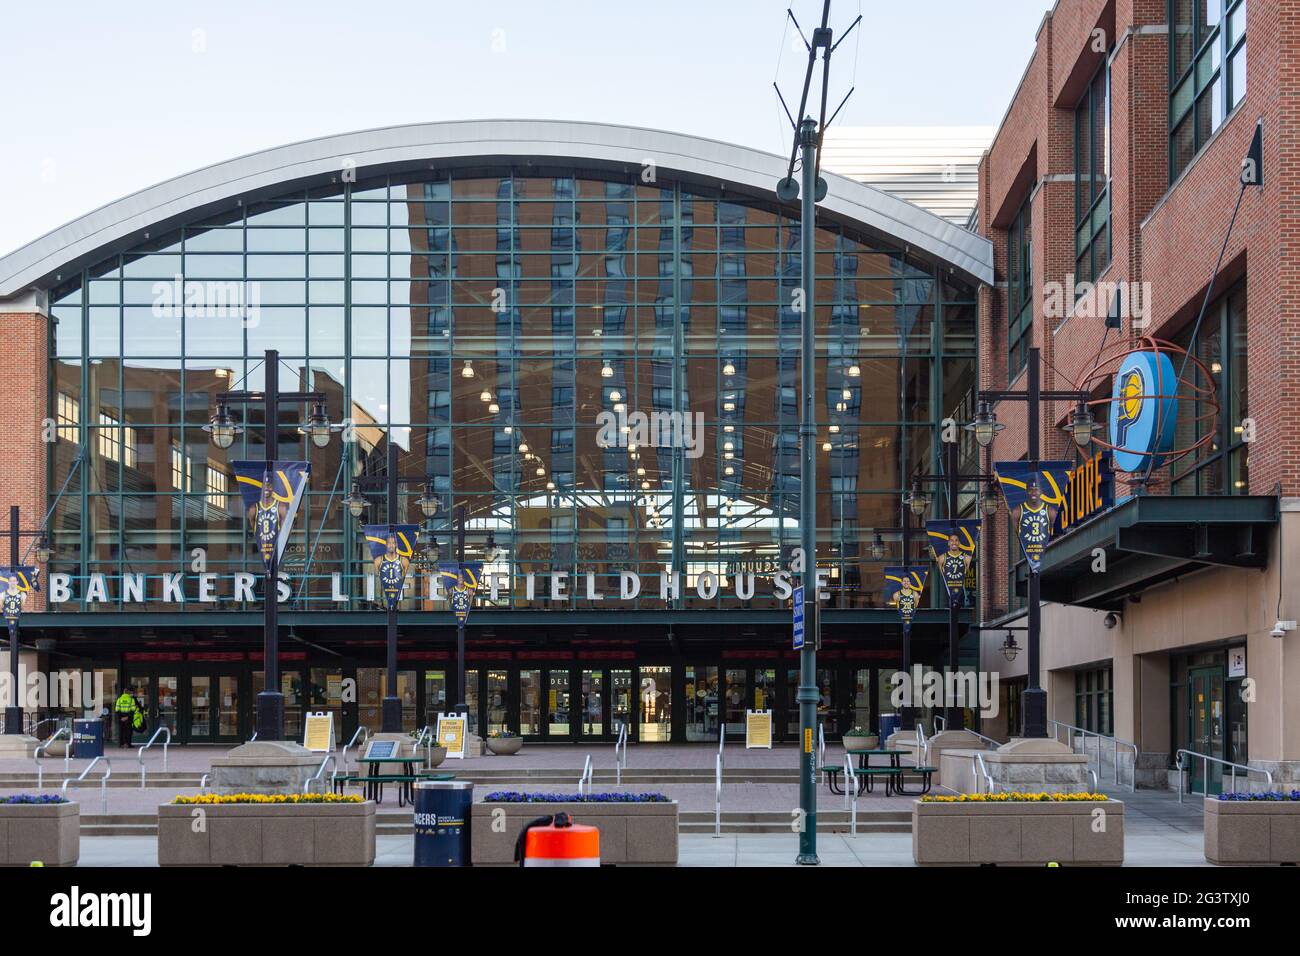 Gainbridge Fieldhouse (ex Bankers Life), sede degli Indiana Pacers, è uno stadio NBA nel centro di Indianapolis, Indiana, USA. Foto Stock